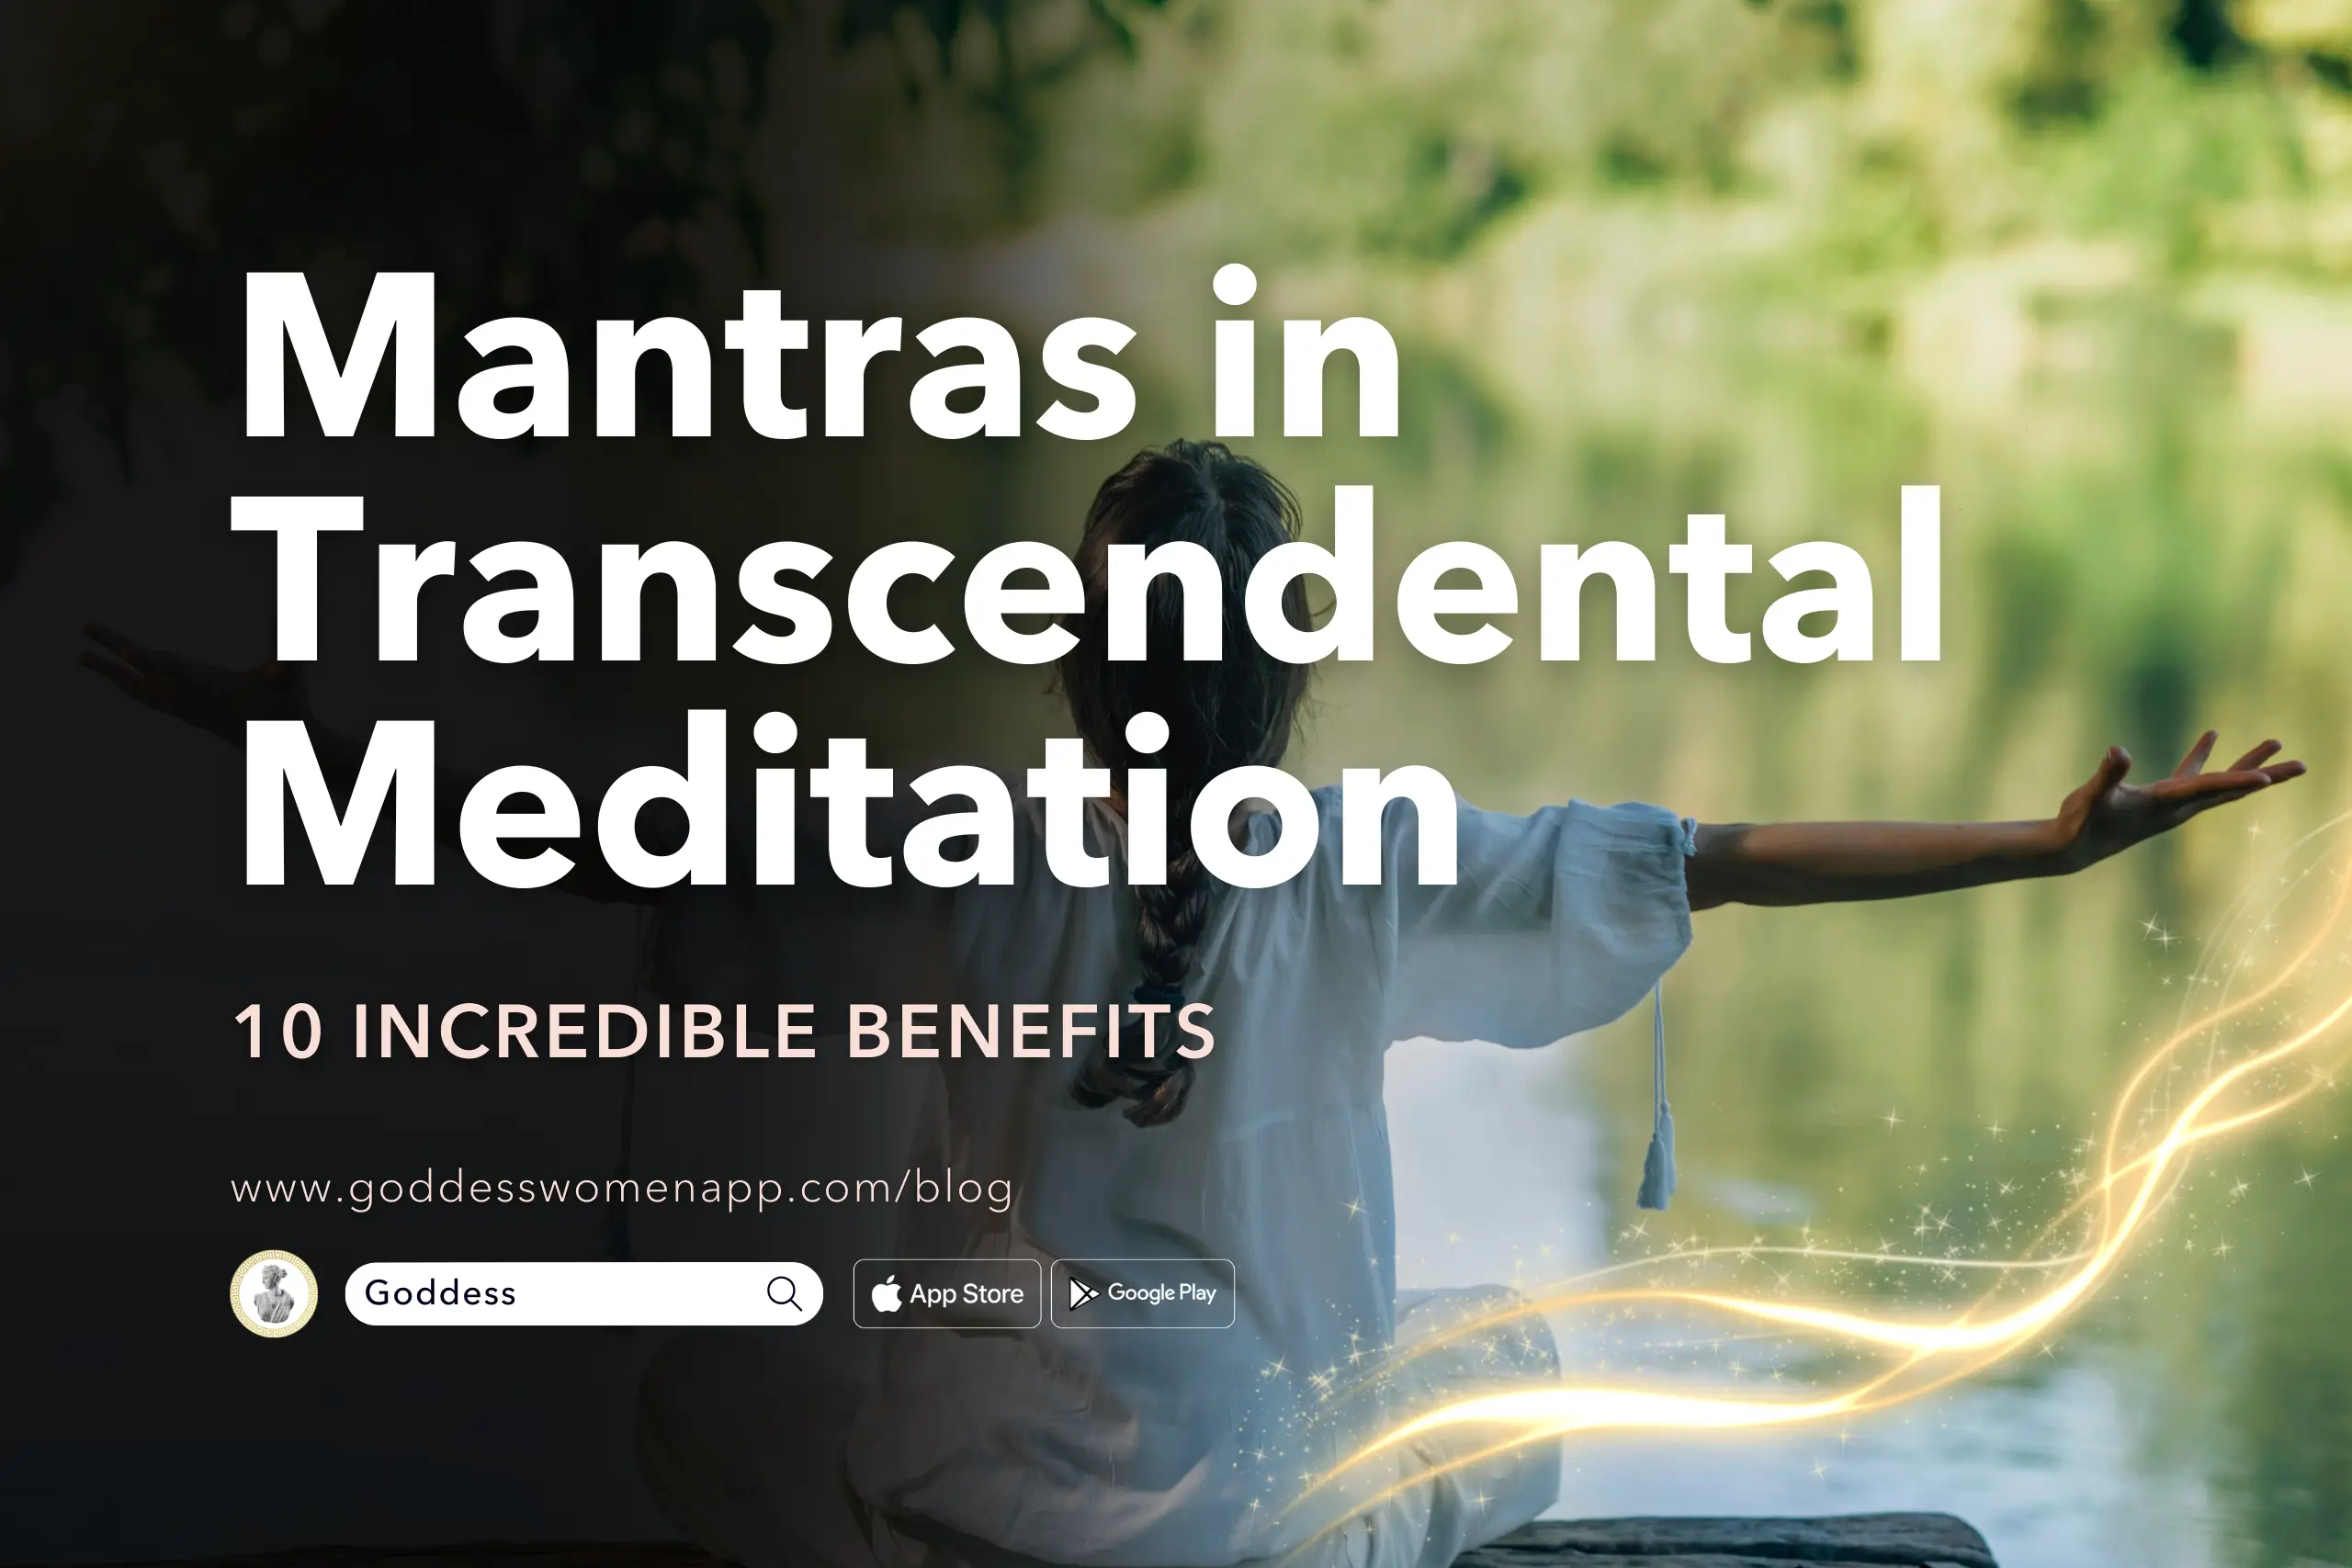 10 Incredible Benefits of Mantras in Transcendental Meditation